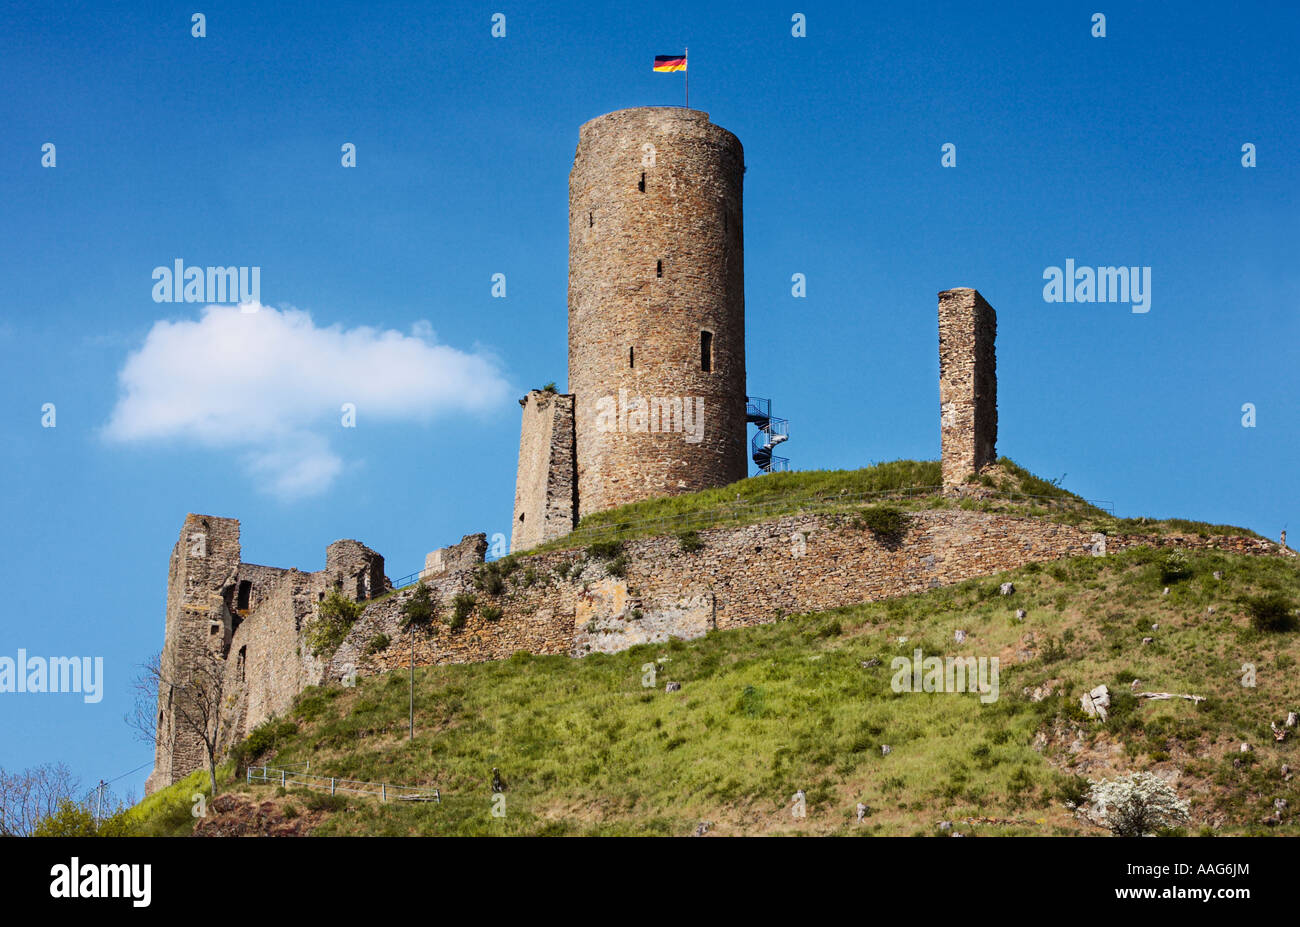 Löwenburg château ruine à Monreal, Germany, Europe Banque D'Images